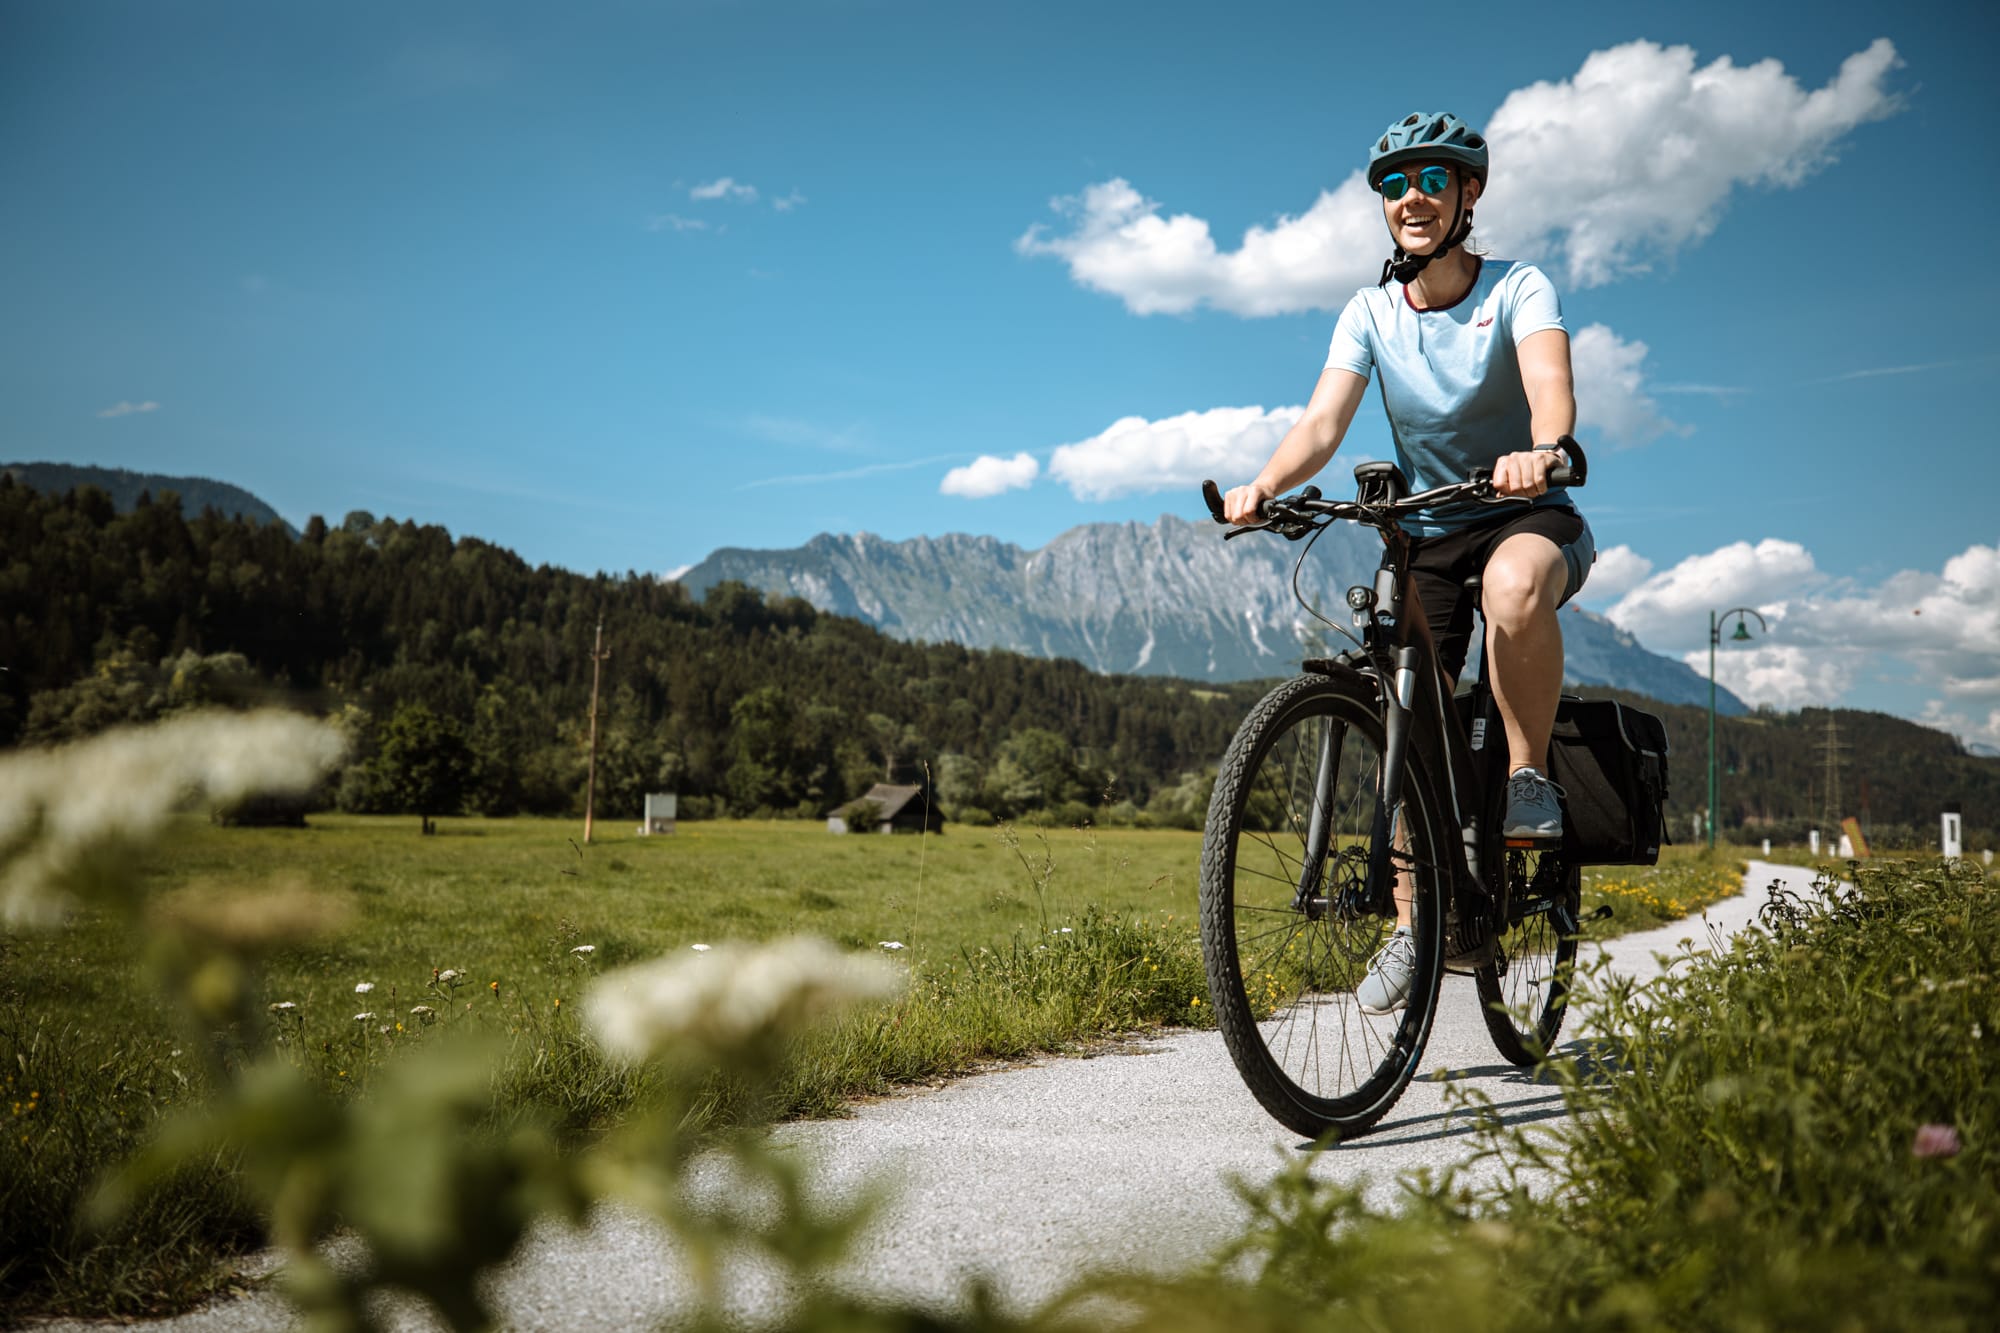 frau auf fahrrad vor bergen in österreich